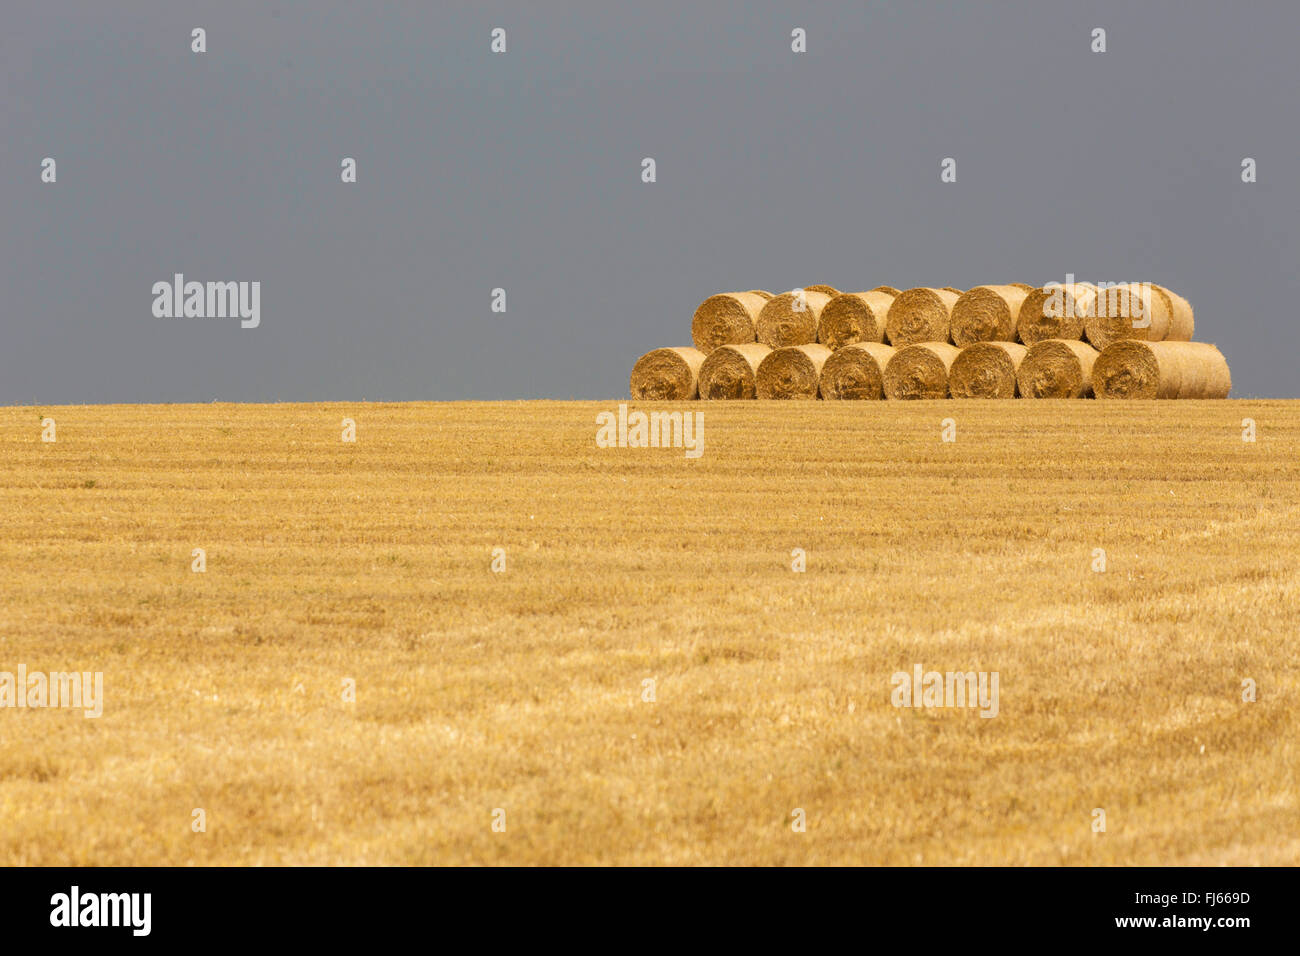 Le blé tendre, cultivé du blé (Triticum aestivum), récoltées en champ avec des balles de paille, Allemagne, Bavière, Oberbayern, Haute-Bavière Banque D'Images